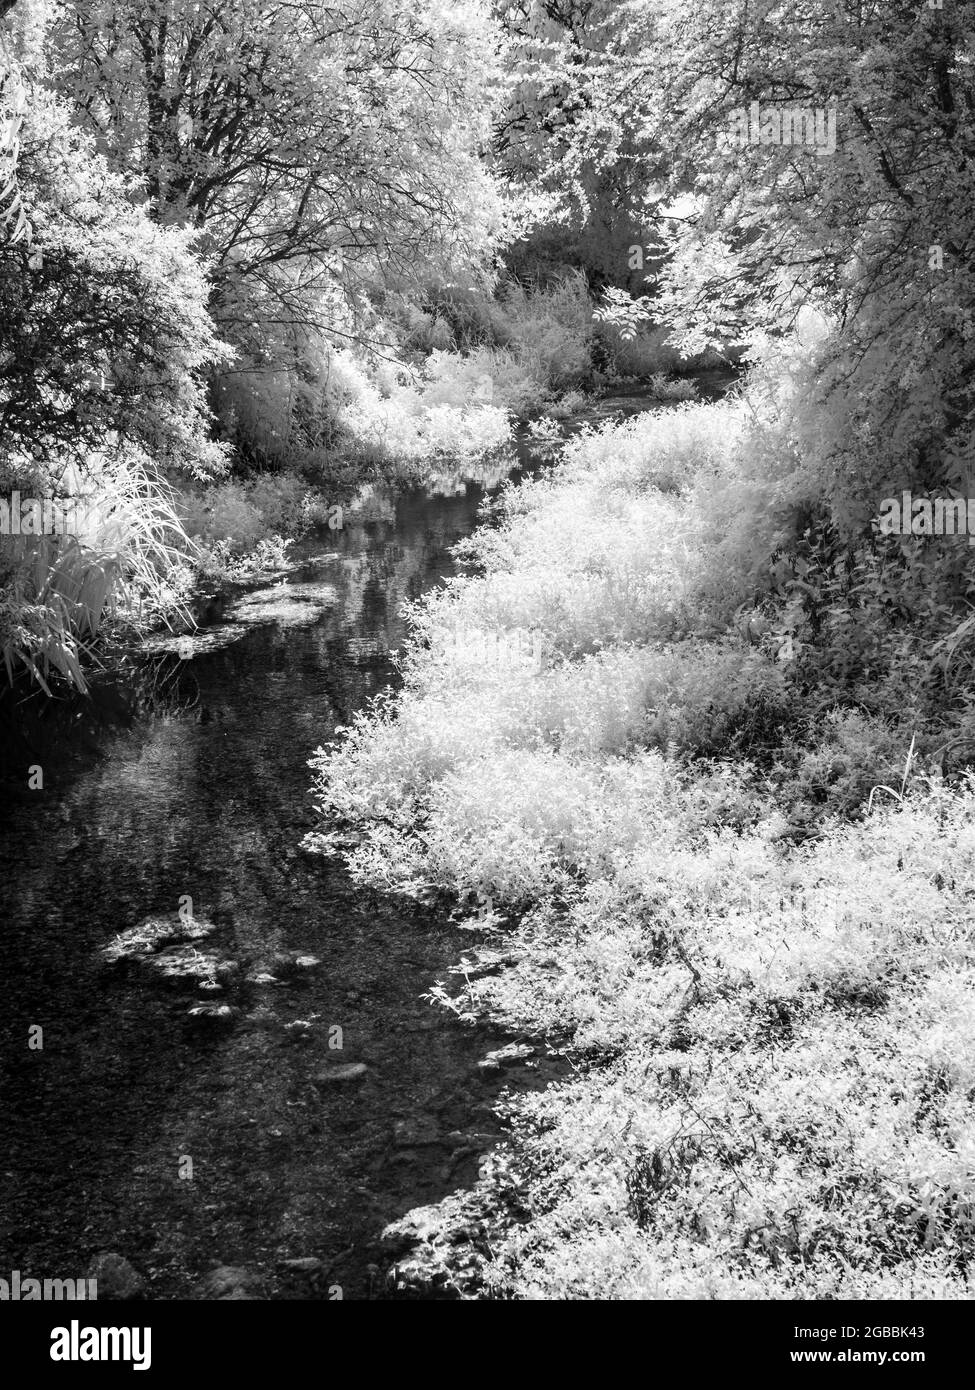 Il fiume Kennett vicino a Marlborough nel Wiltshire, sparato a infrarossi. Foto Stock